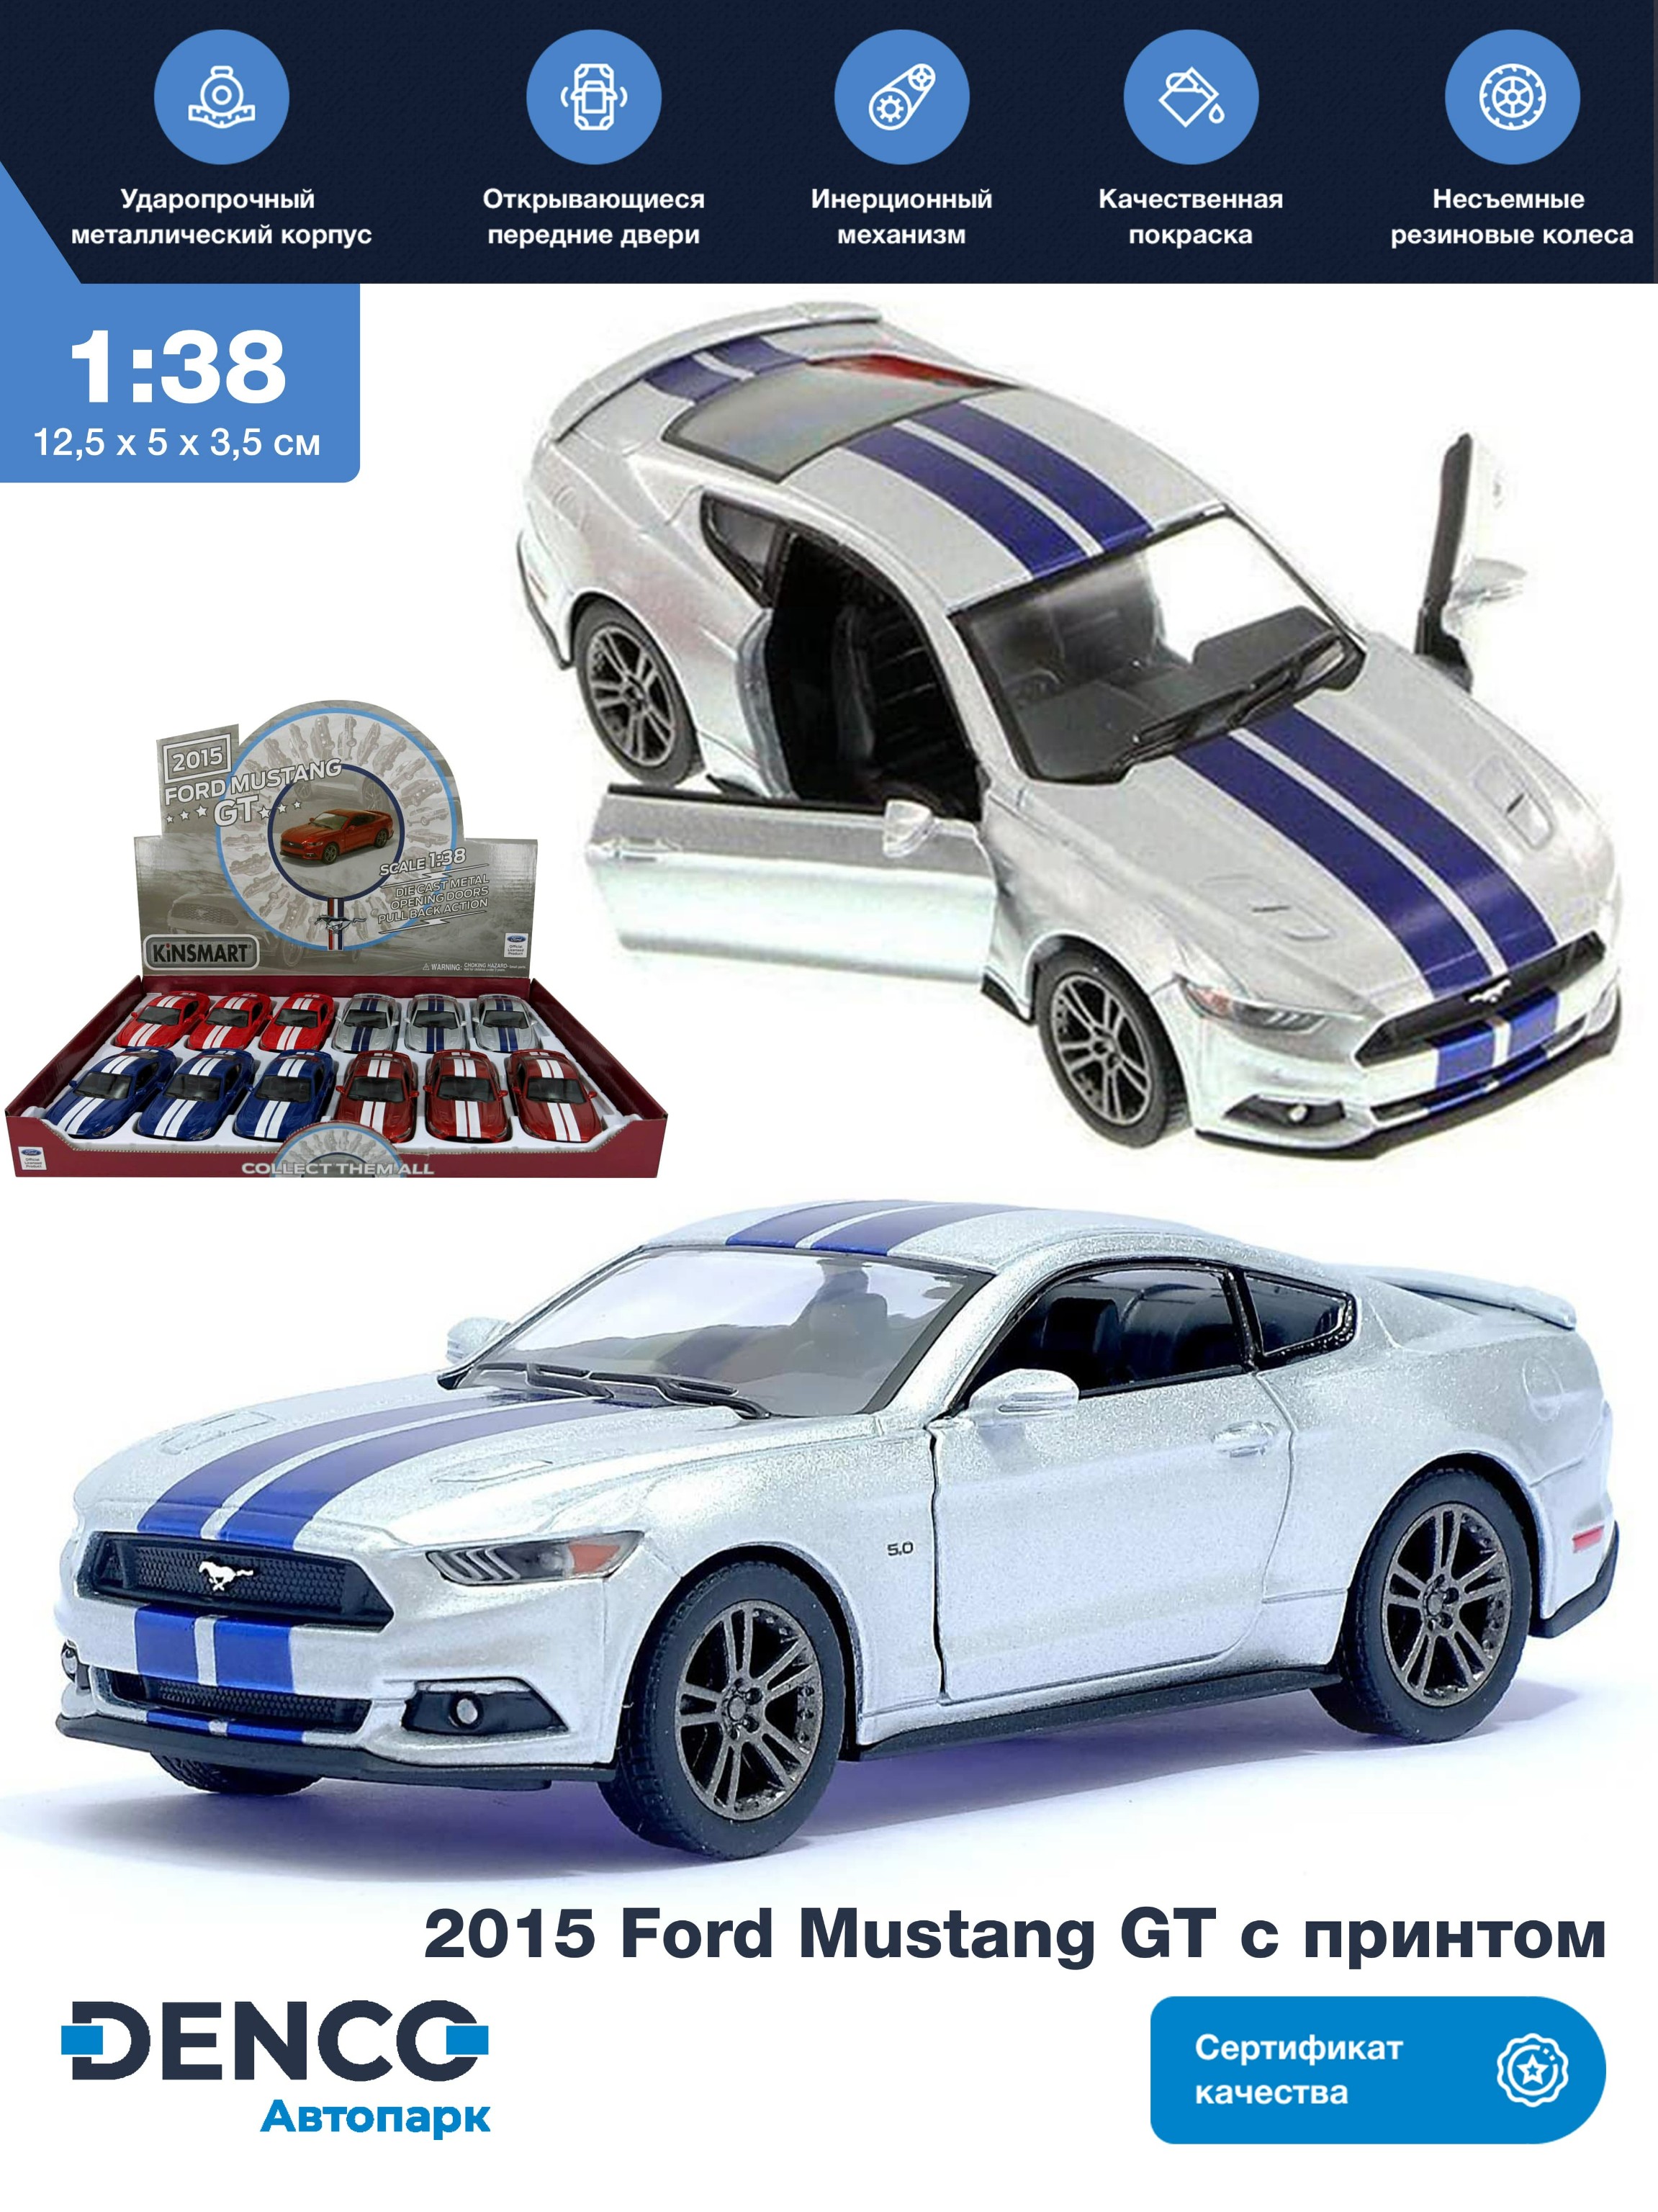 Металлическая машинка Kinsmart 1:38 «2015 Ford Mustang GT с принтом» KT5386DF инерционная / Серебристый